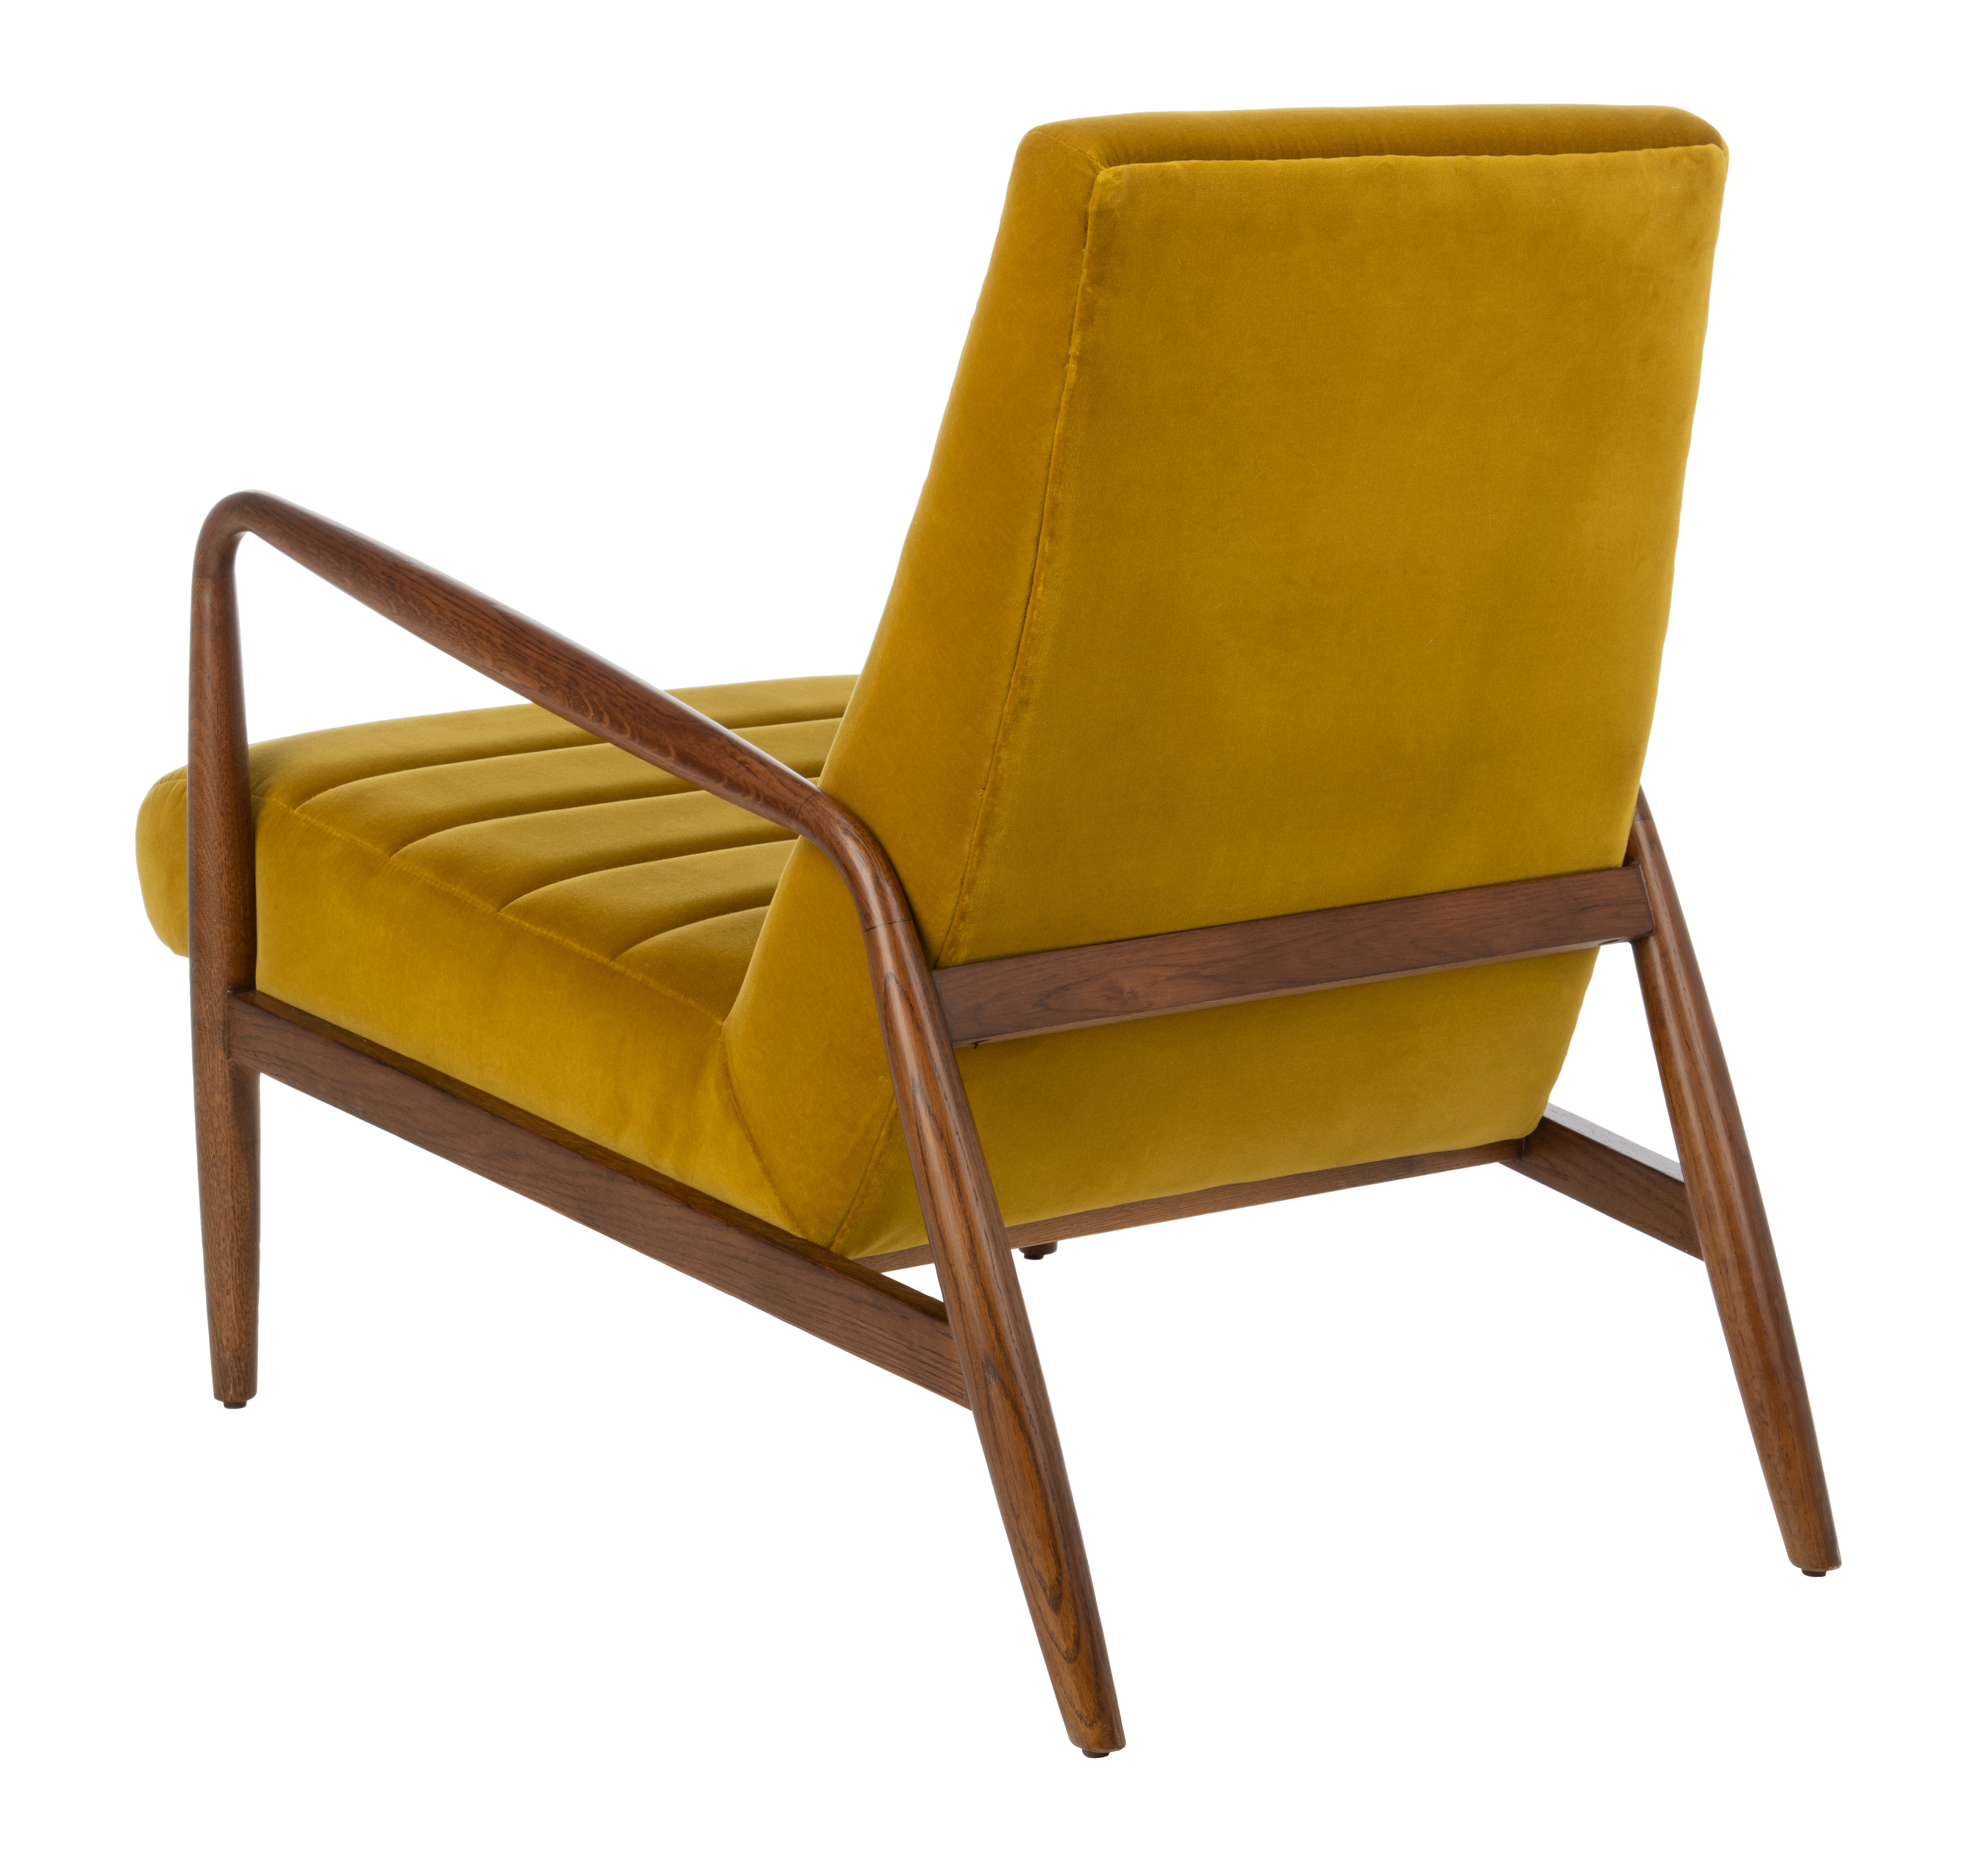 Willow Channel Tufted Arm Chair - Gold/Dark Walnut - Safavieh - Image 2